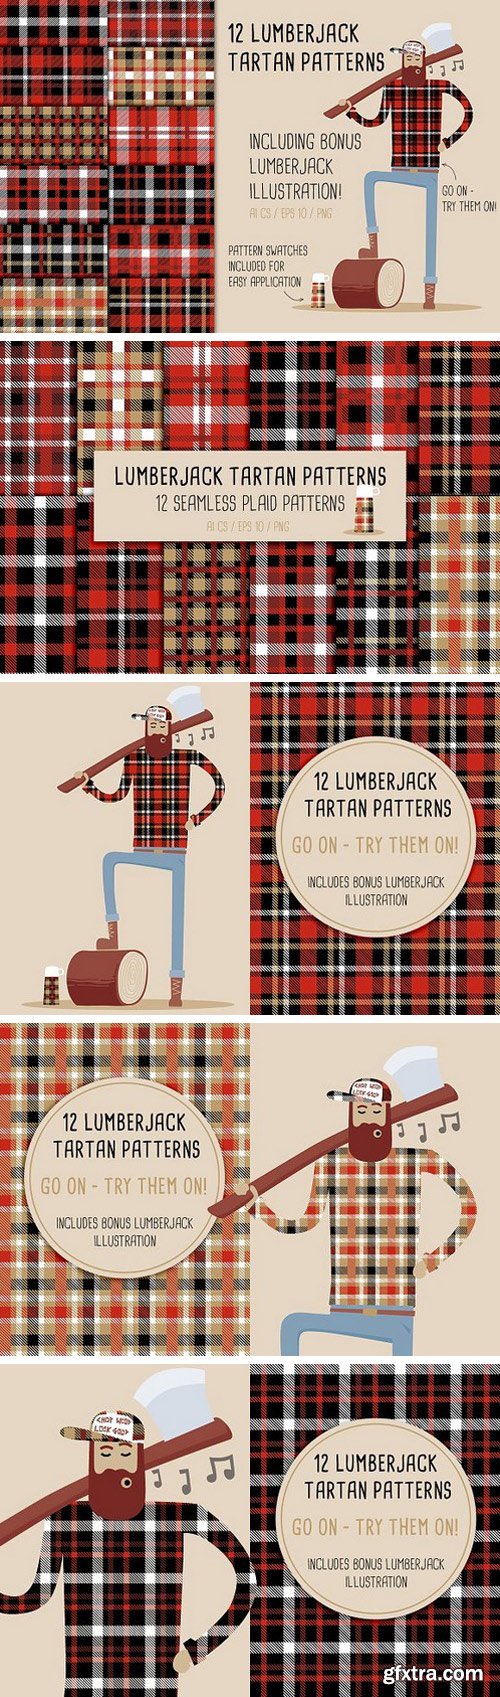 12 Lumberjack Tartan Patterns